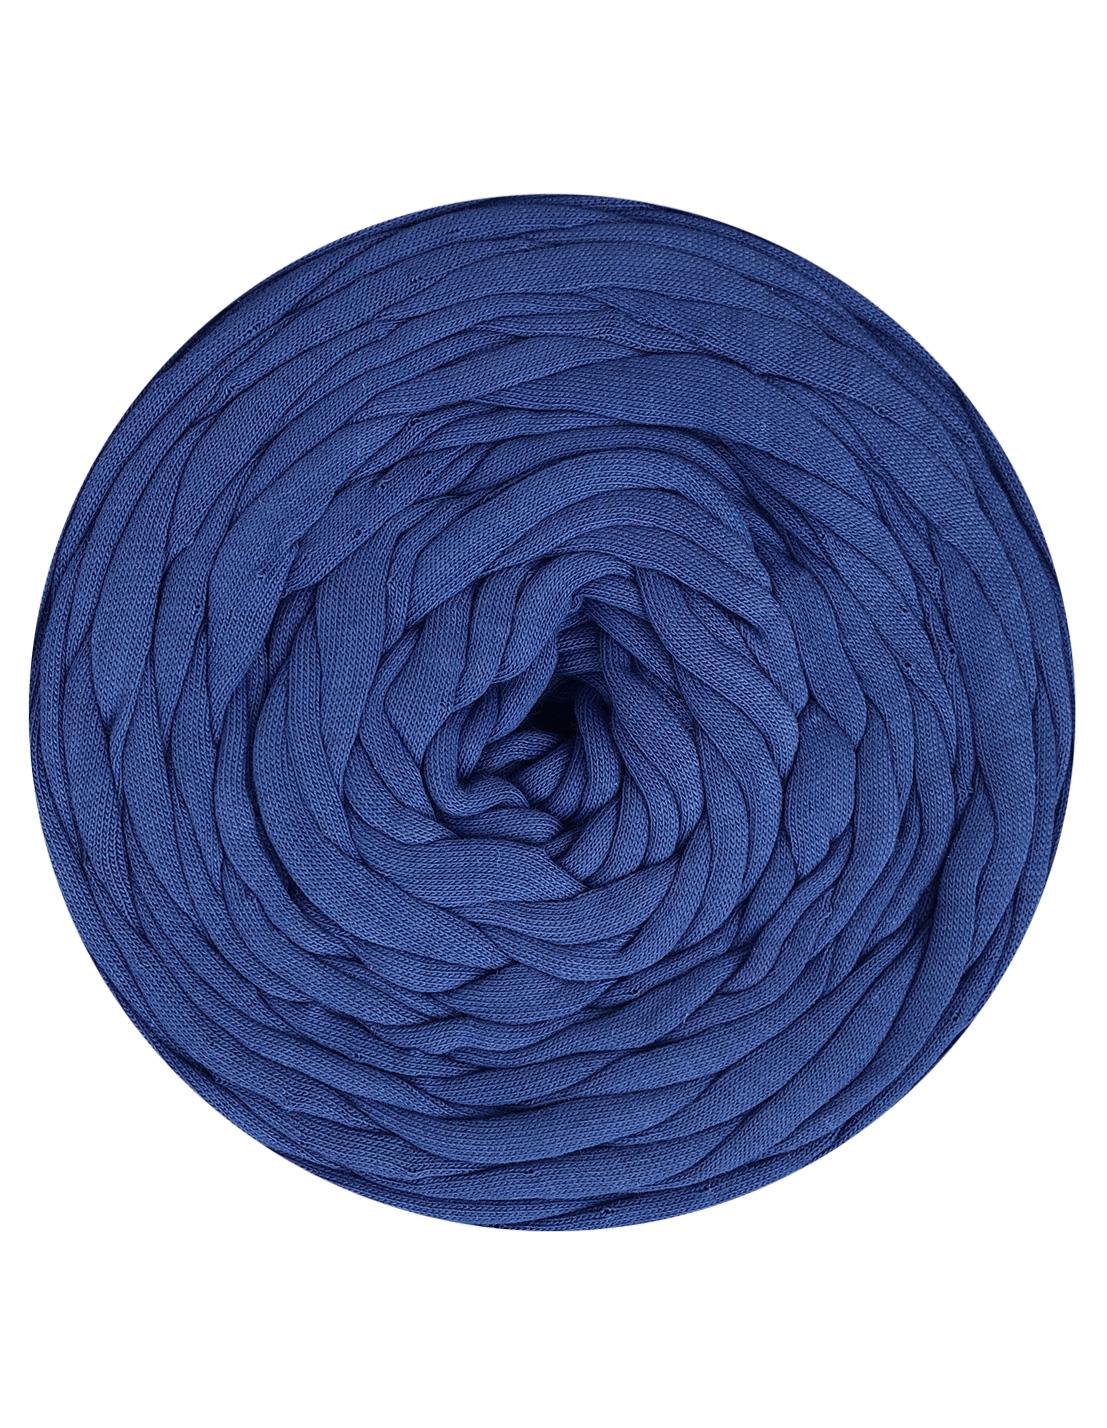 Cobalt blue t-shirt yarn by Rescue Yarn (100-120m)